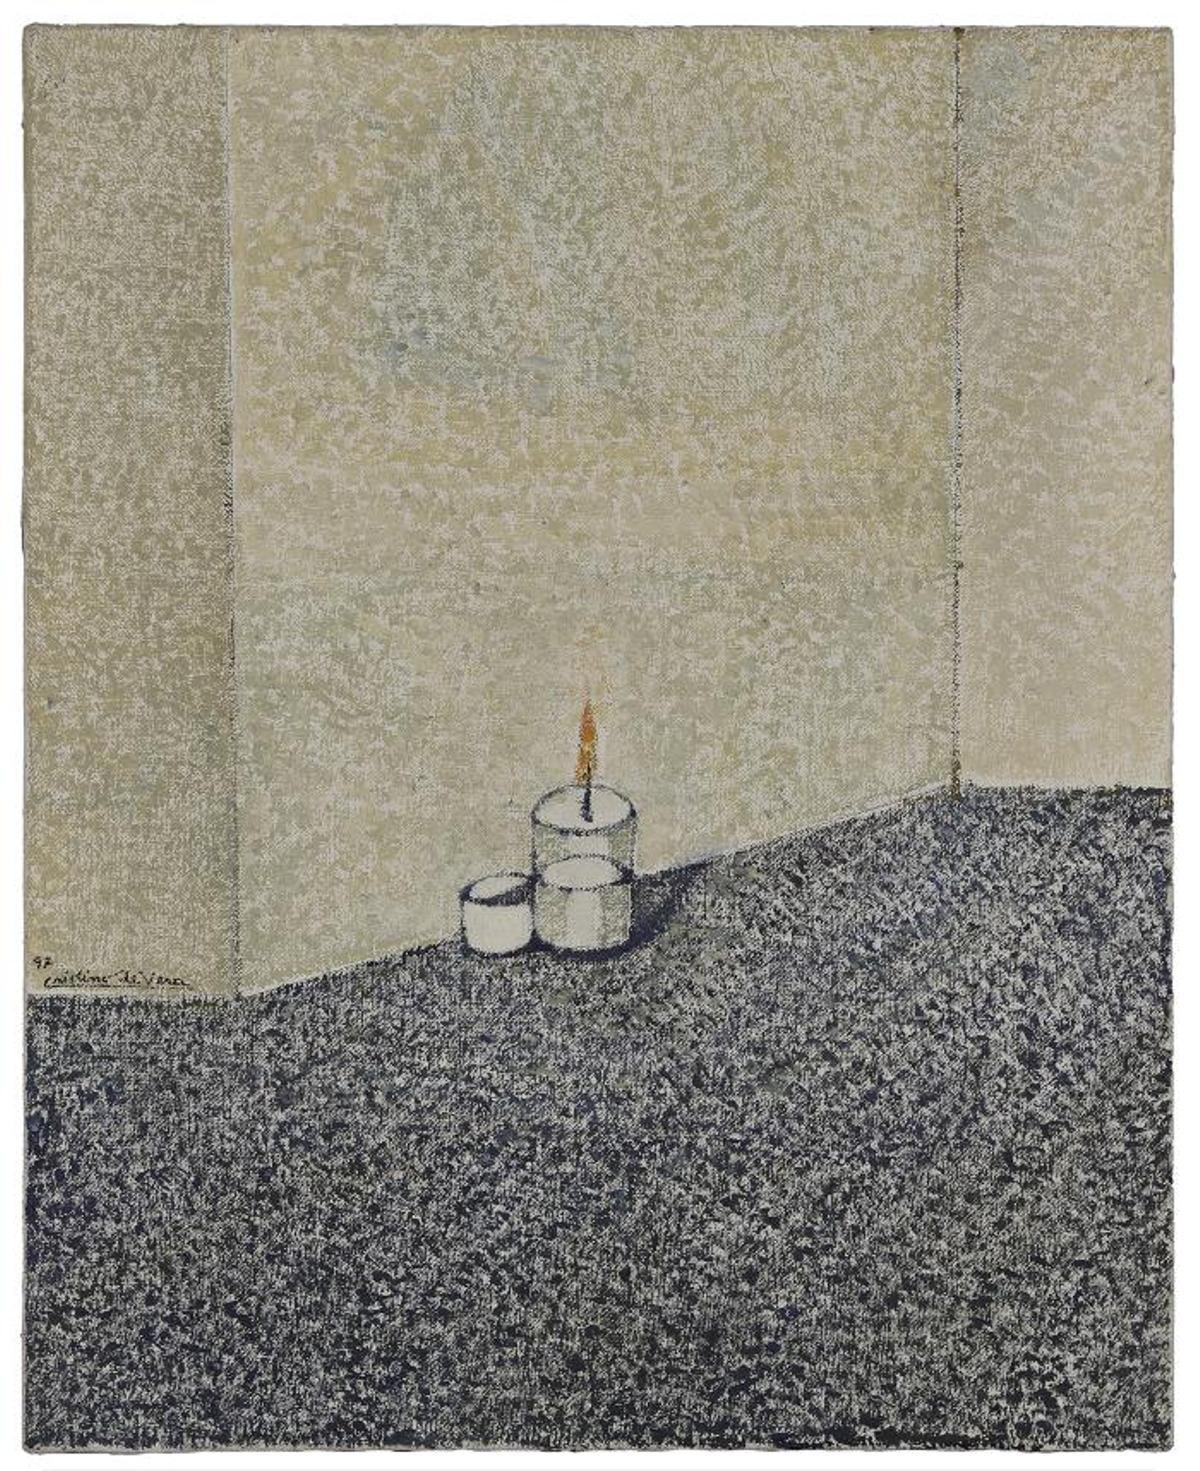 'Muros y dos objetos blancos', de Cristino de Vera (1997)